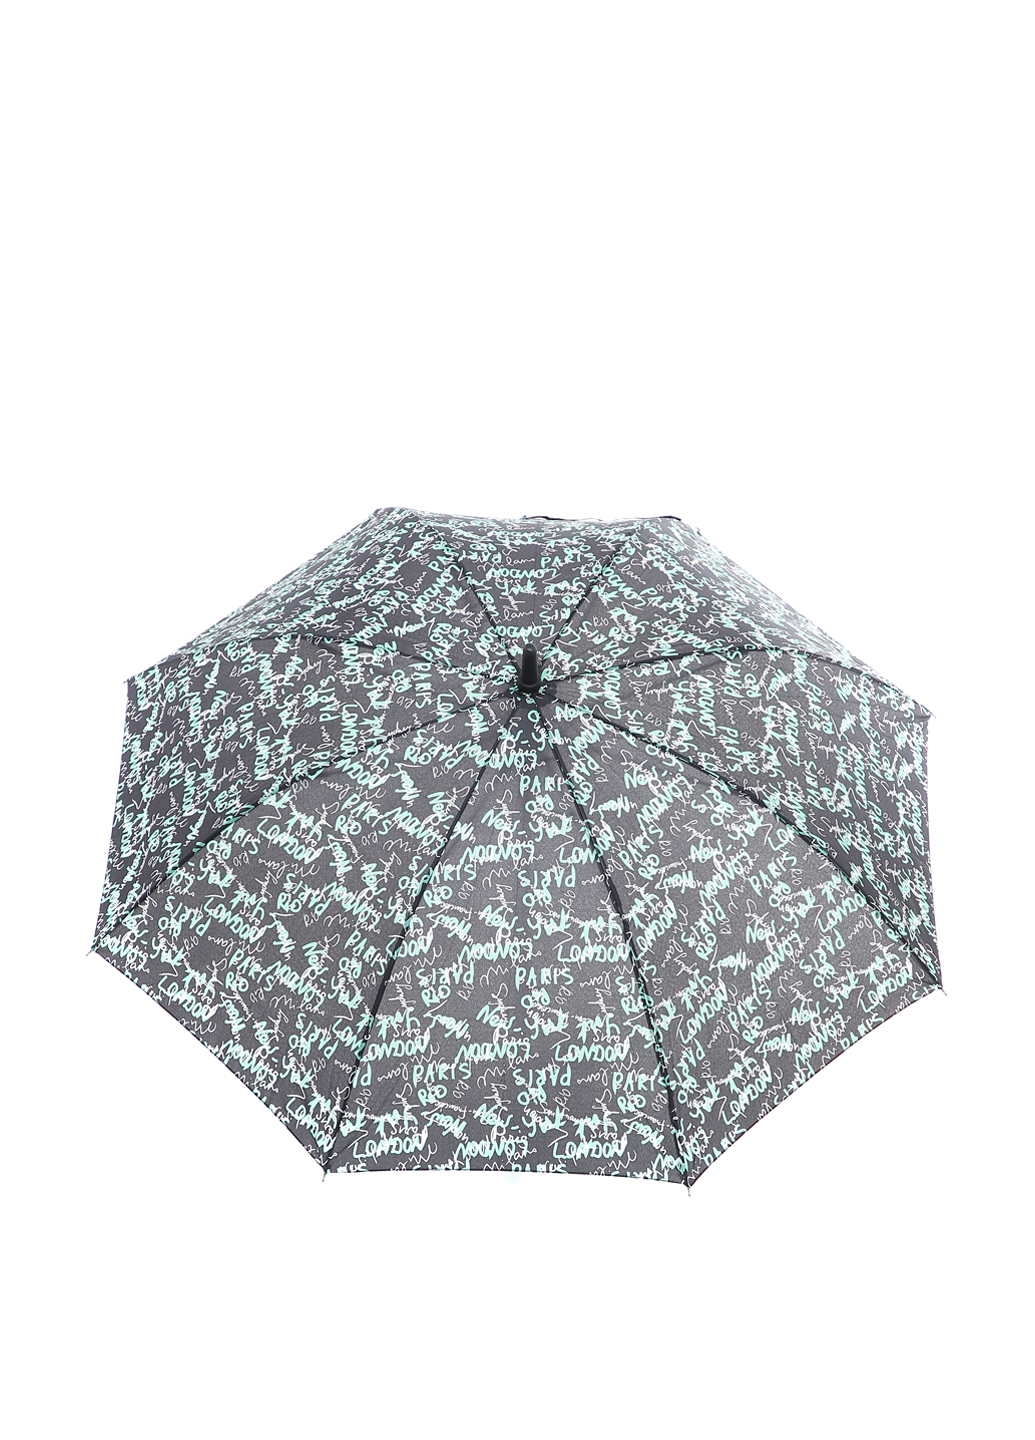 Зонт-трость Ferre Milano Черный с зеленым (591)